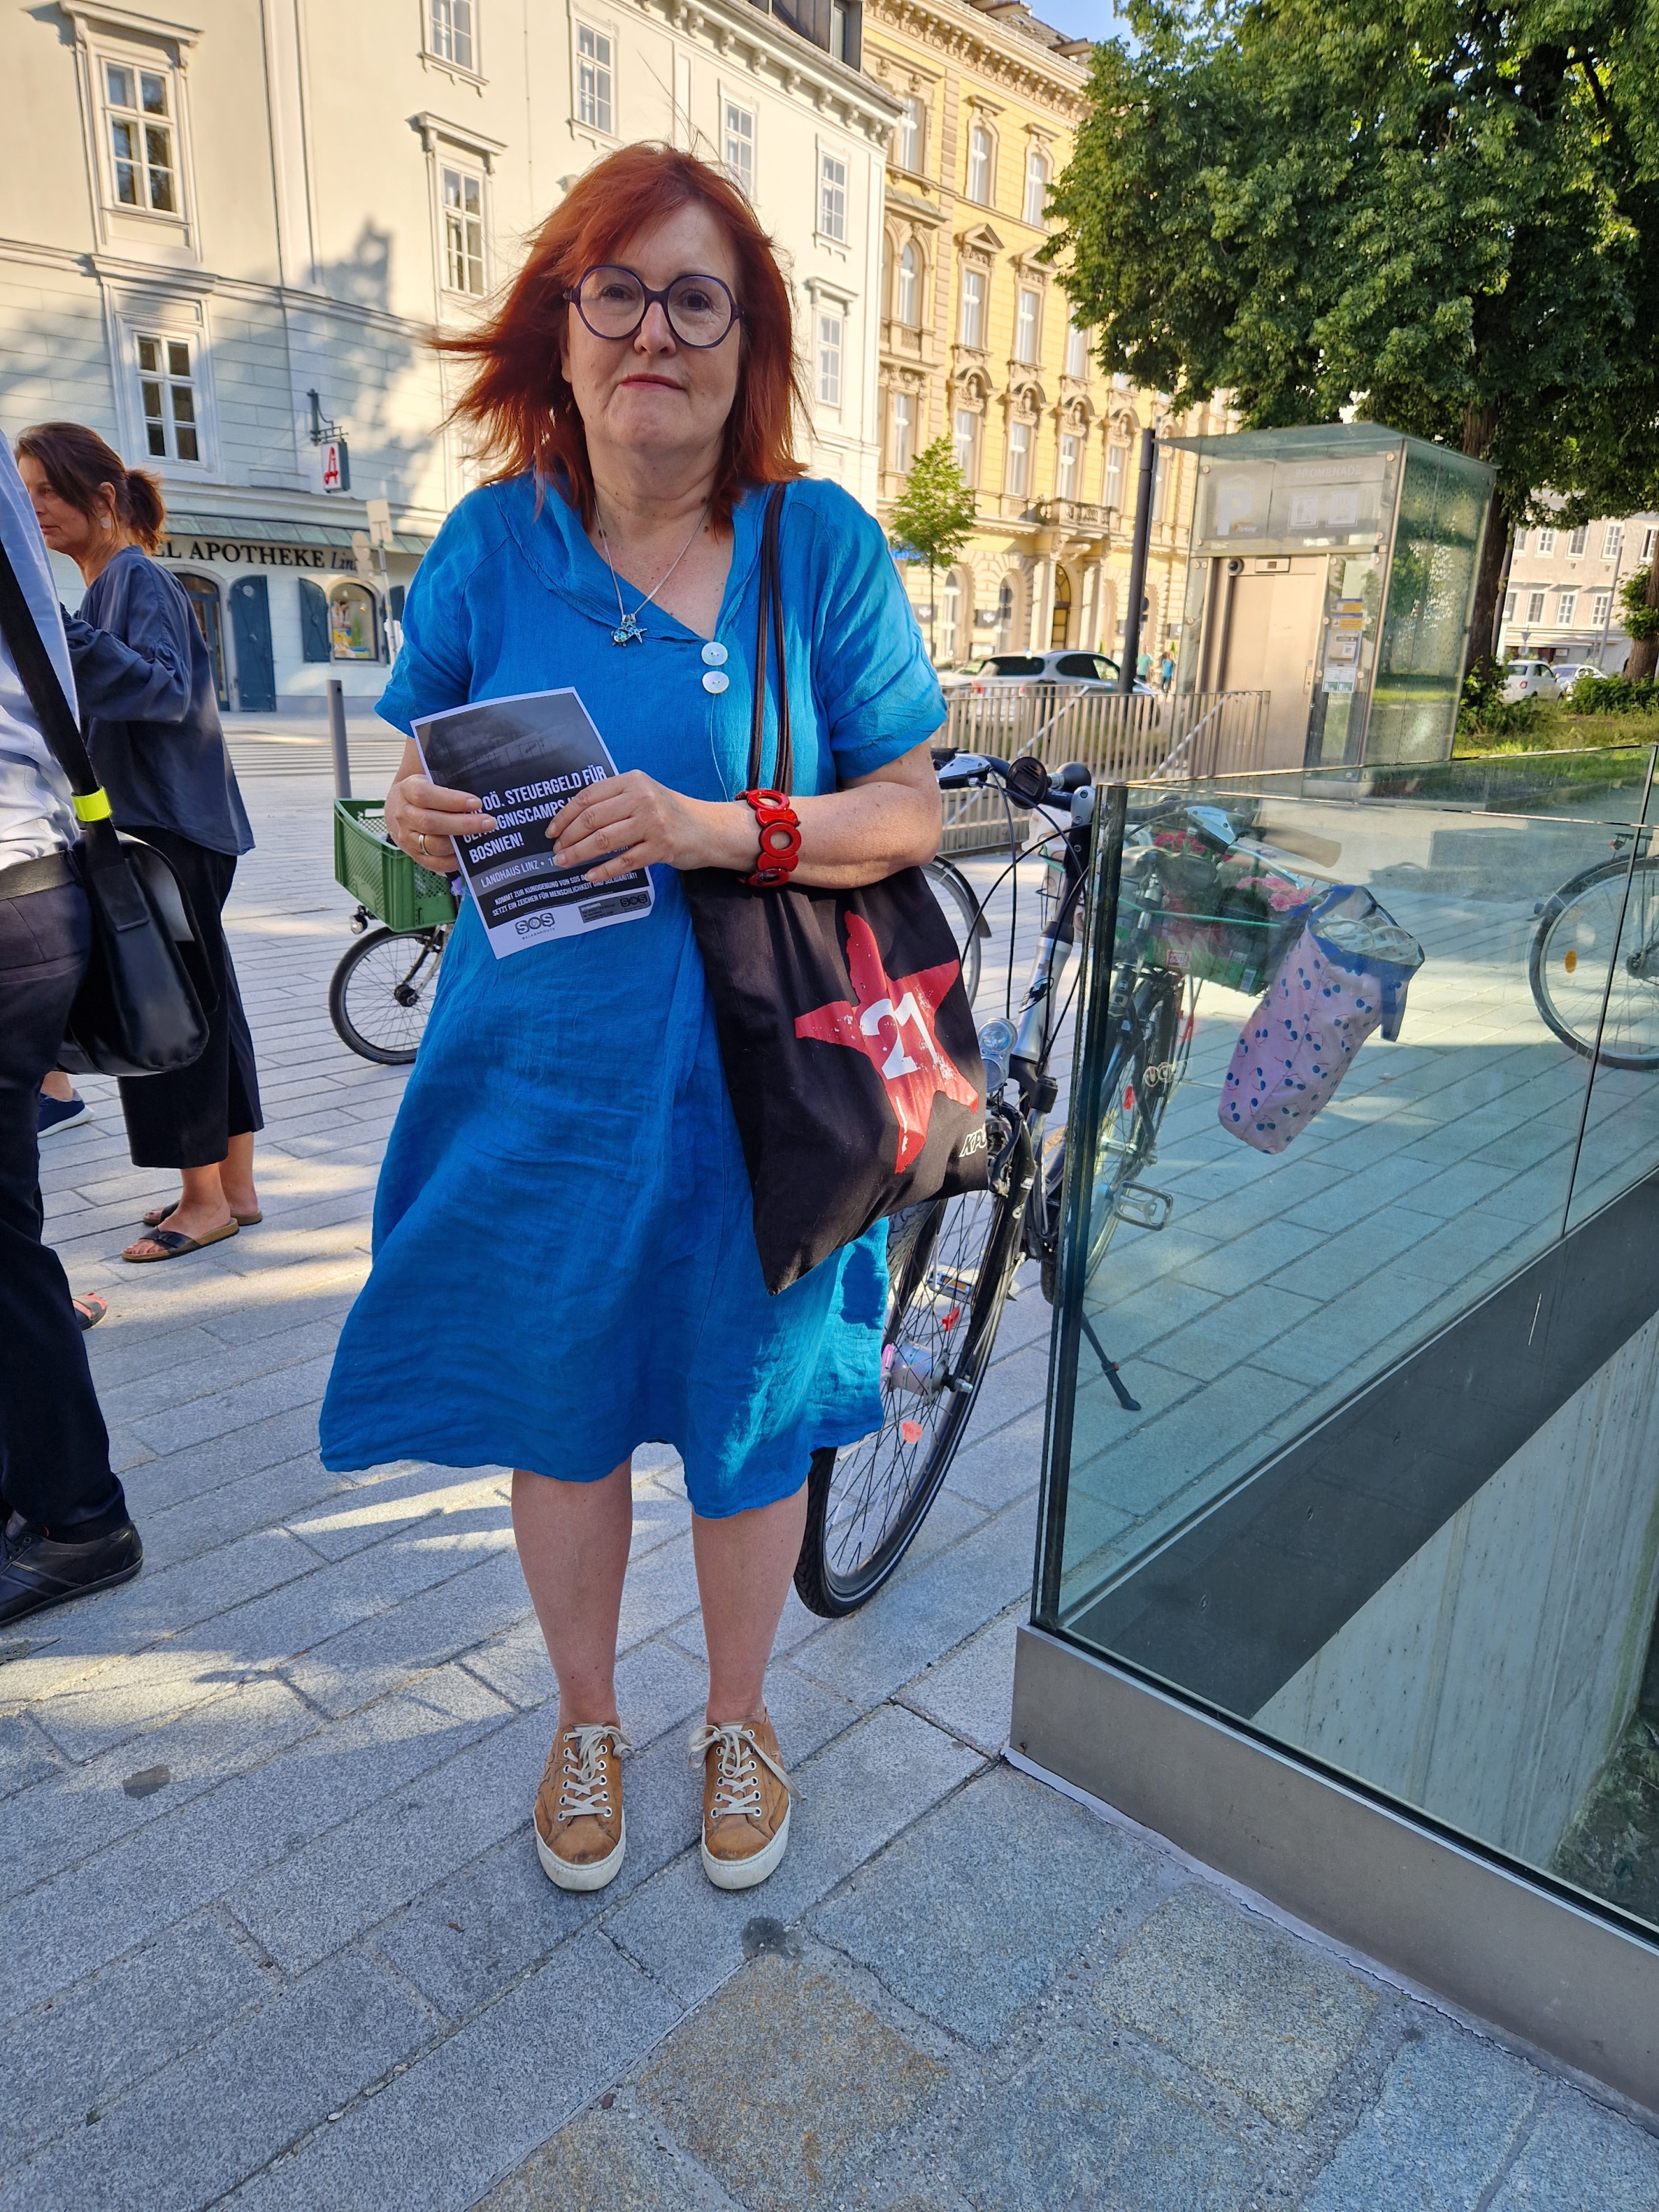 Eine Frau in einem blauen Kleid hält einen Flyer von SOS Balkanroute hoch